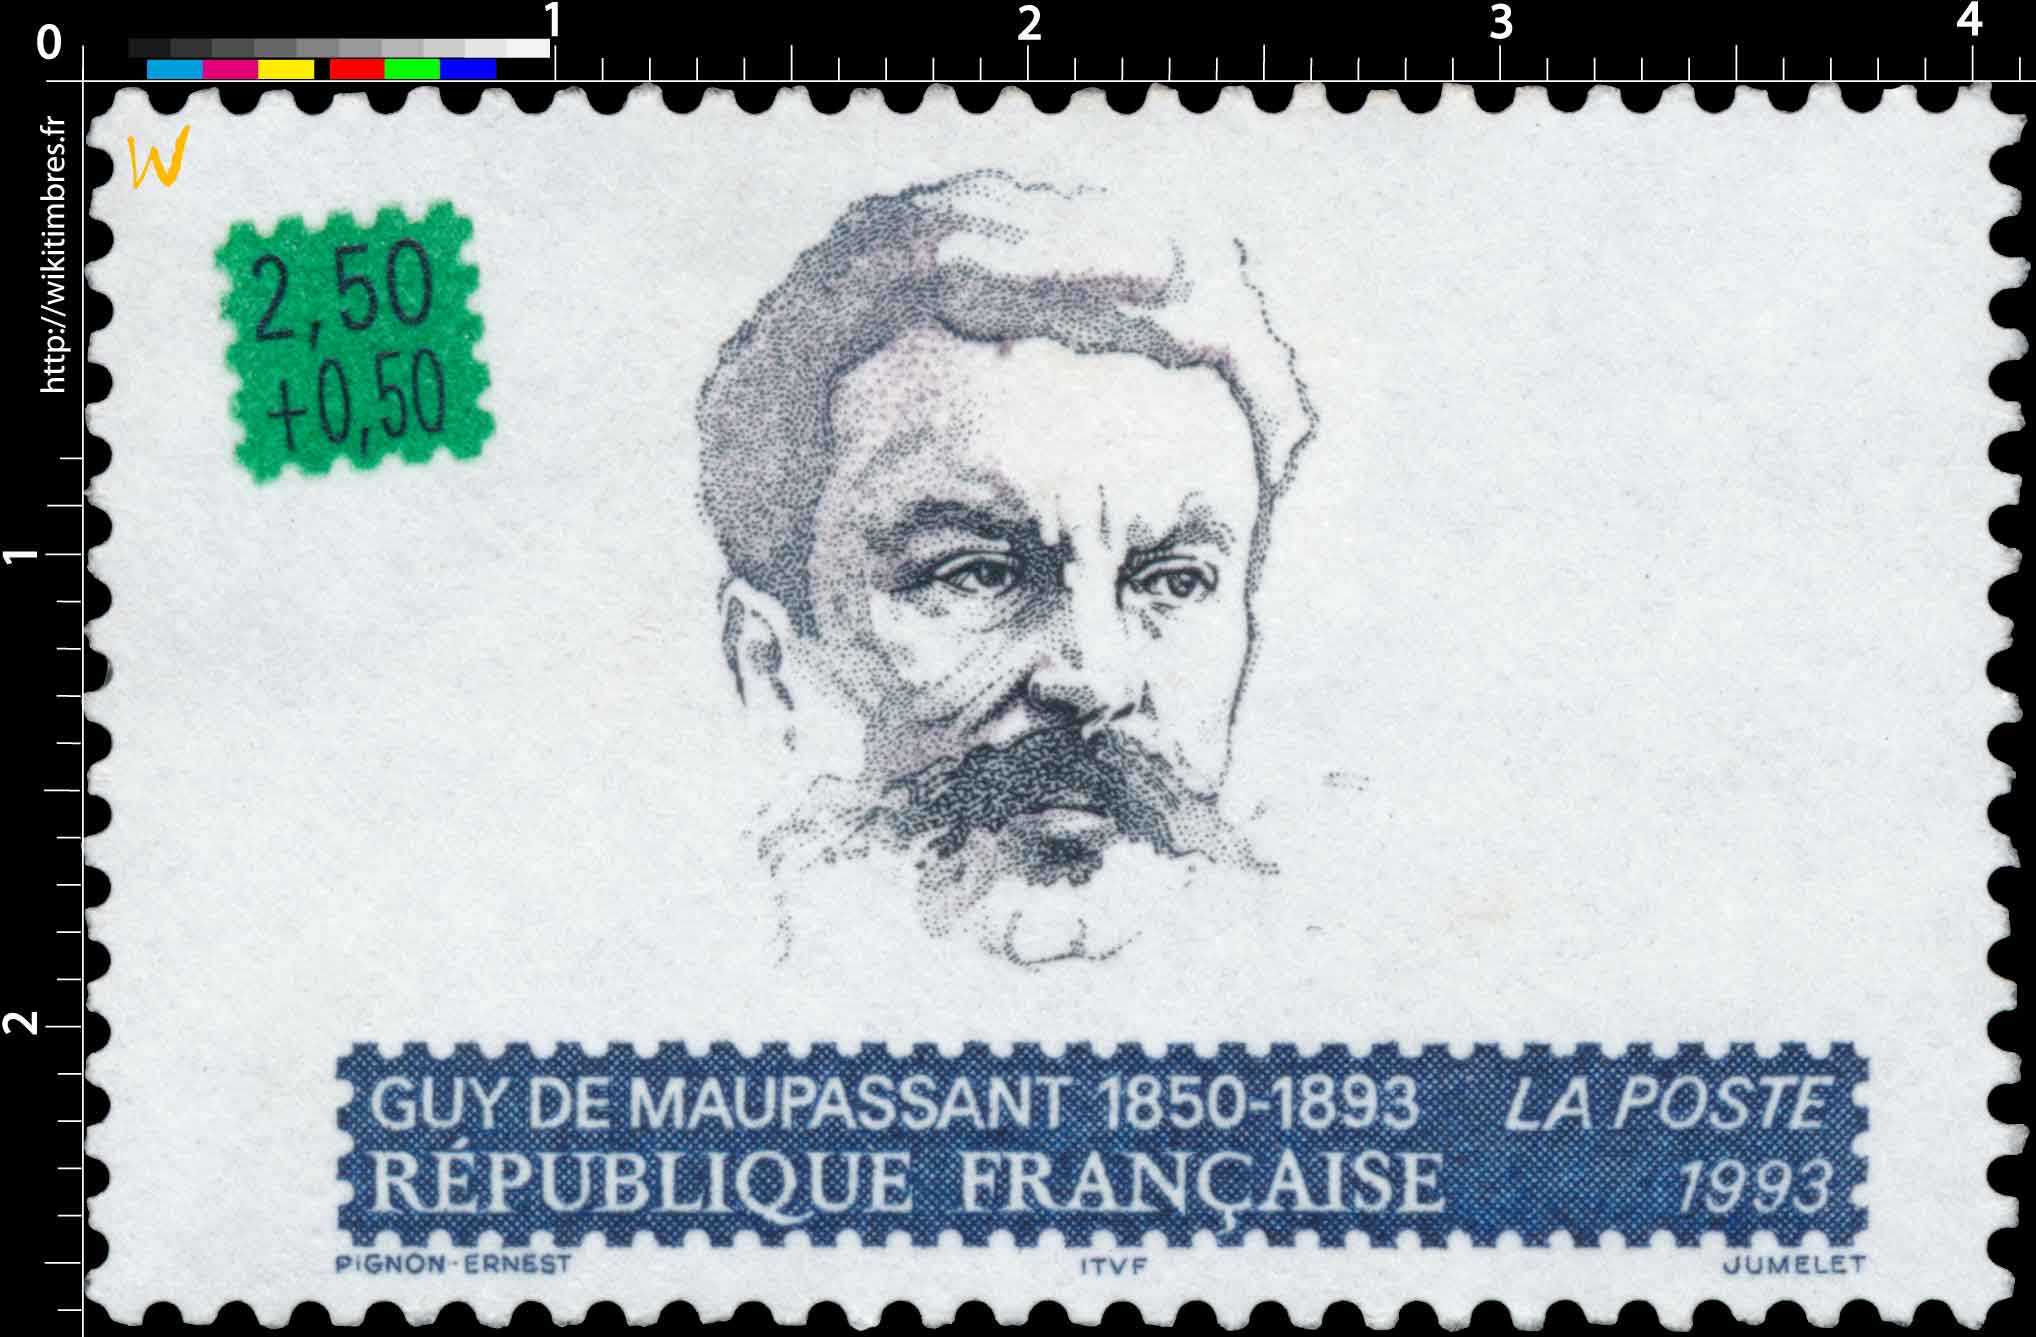 1993 GUY DE MAUPASSANT 1850-1893